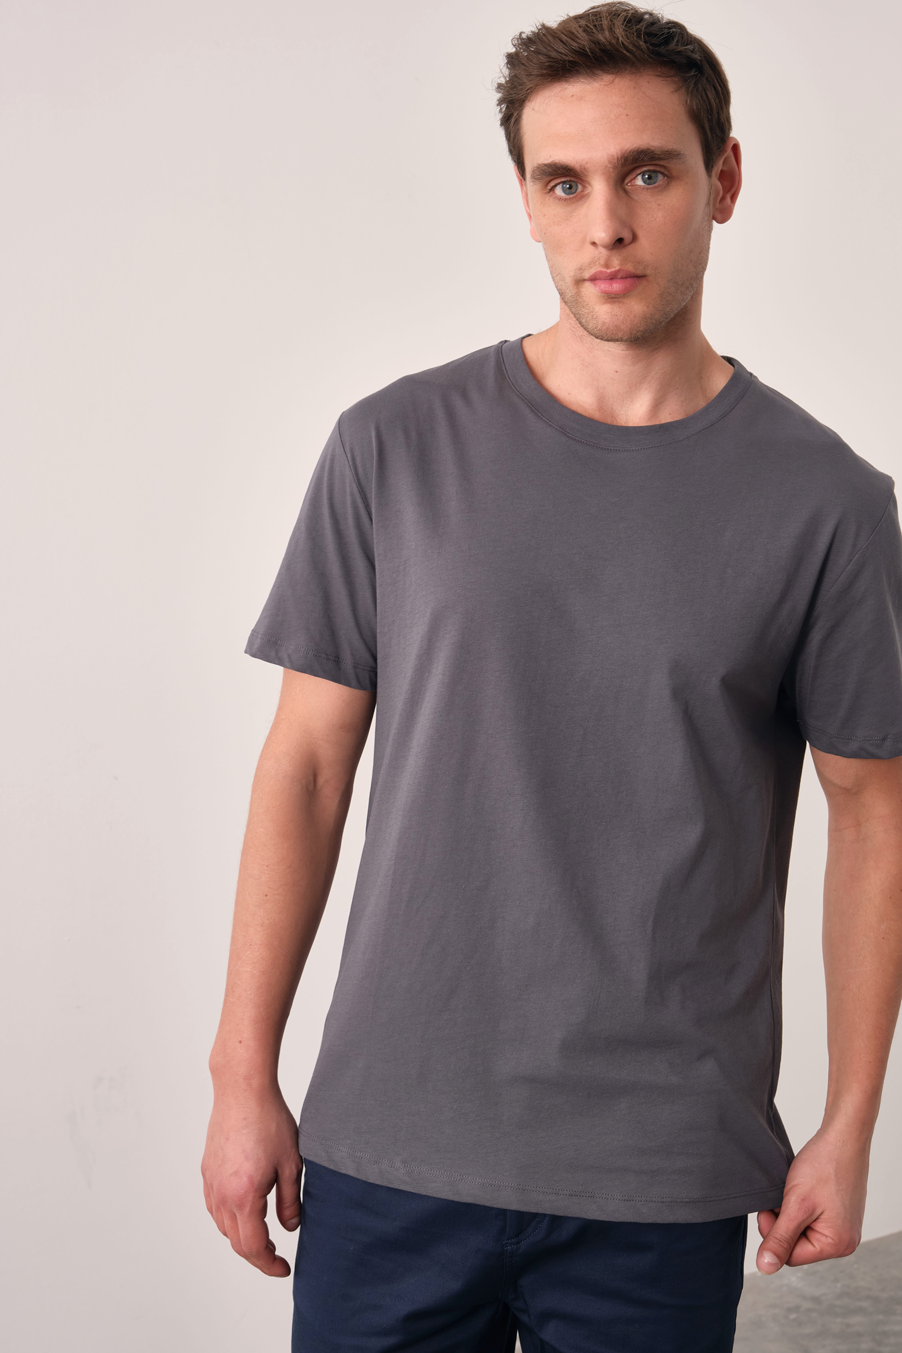 Unisex Crispy Cotton T-shirt